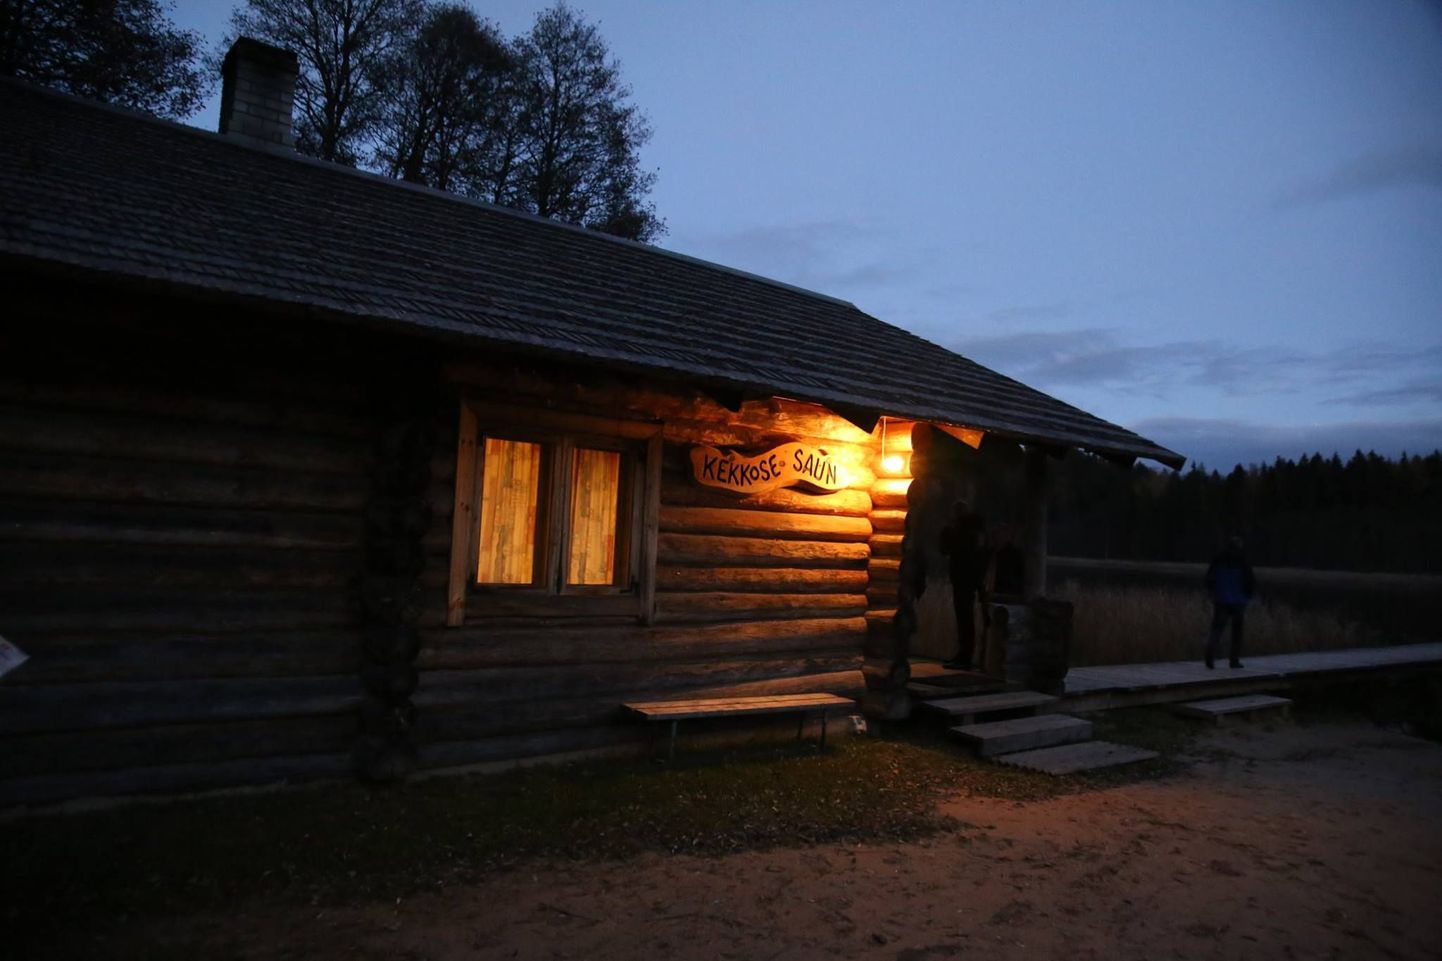 Saunatuuri teine siht oli Kekkoneni saun Käärikul. Originaalne Kekkoneni visiidi jaoks ehitatud saun põles paraku maha, ent ka uus Kekkoneni saun on ajaloolise tähtsusega.